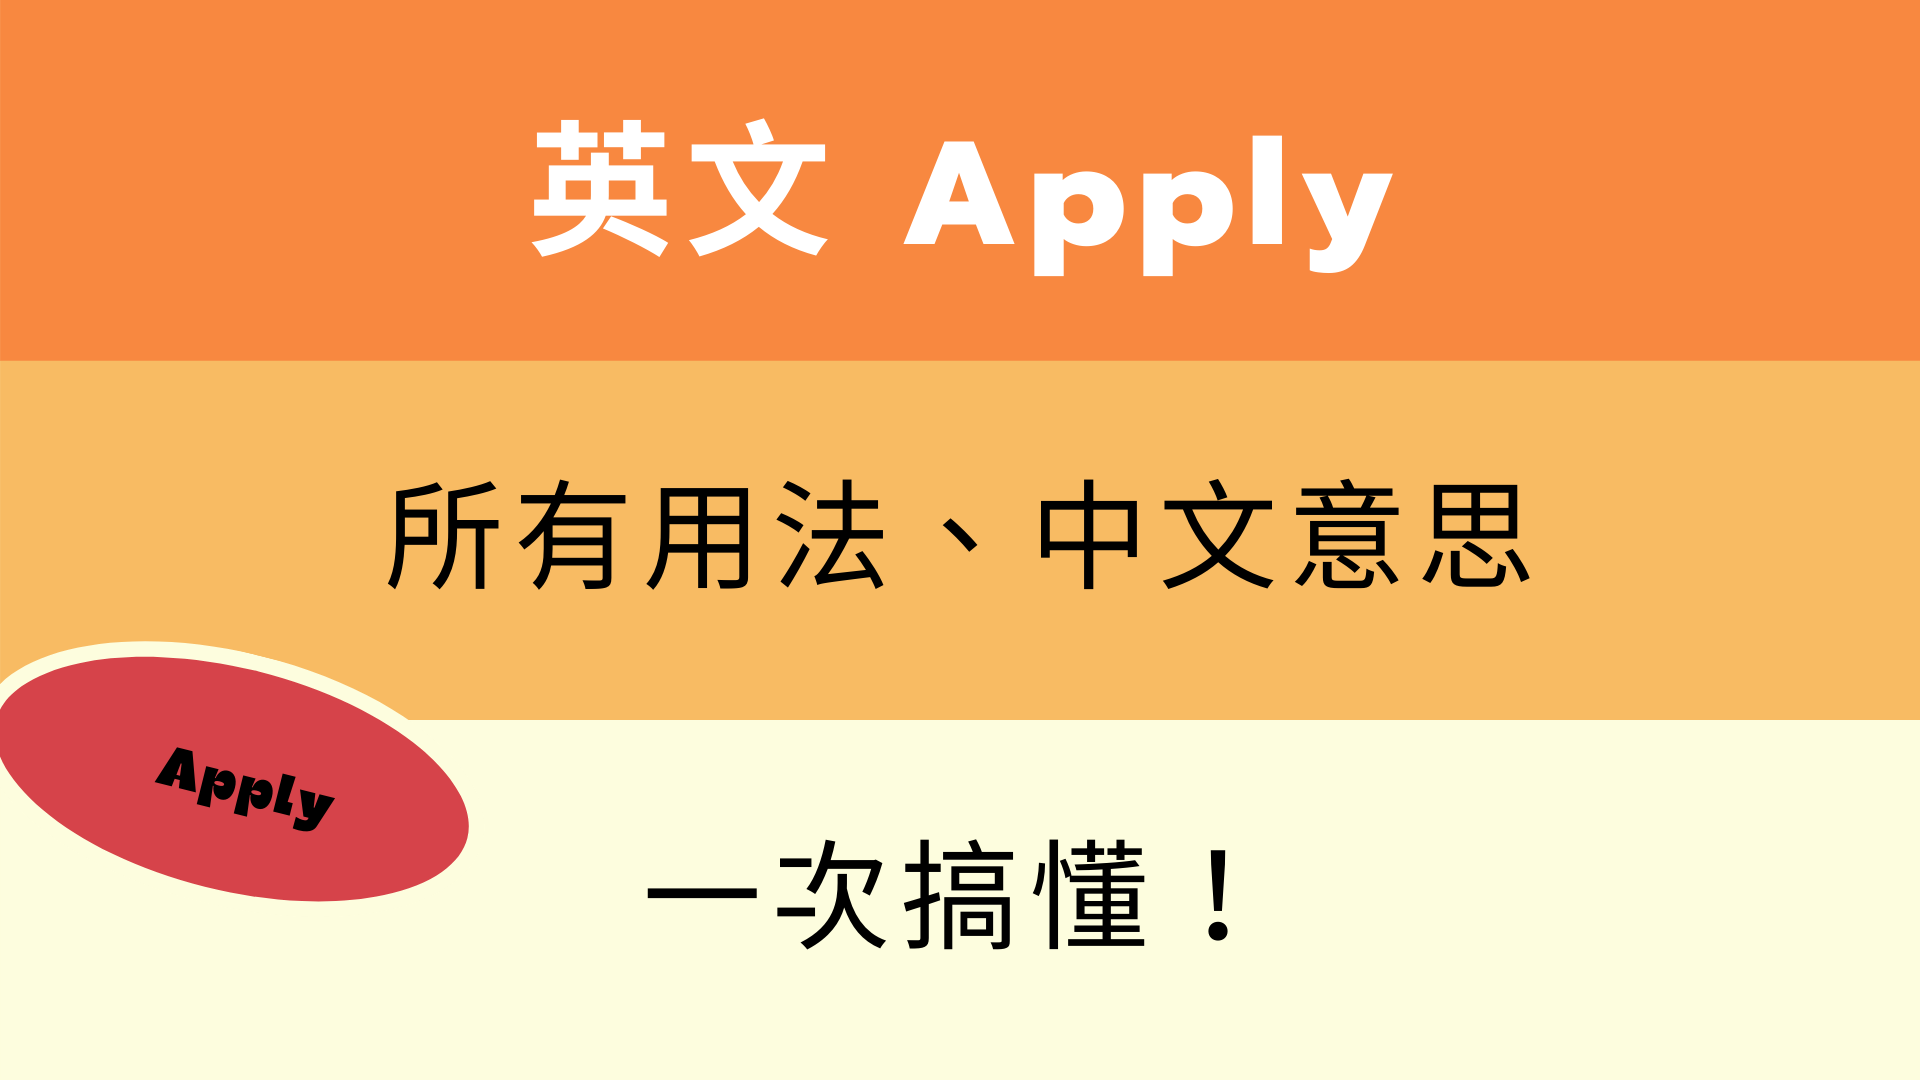 英文 Apply 用法與中文意思！看例句一次搞懂